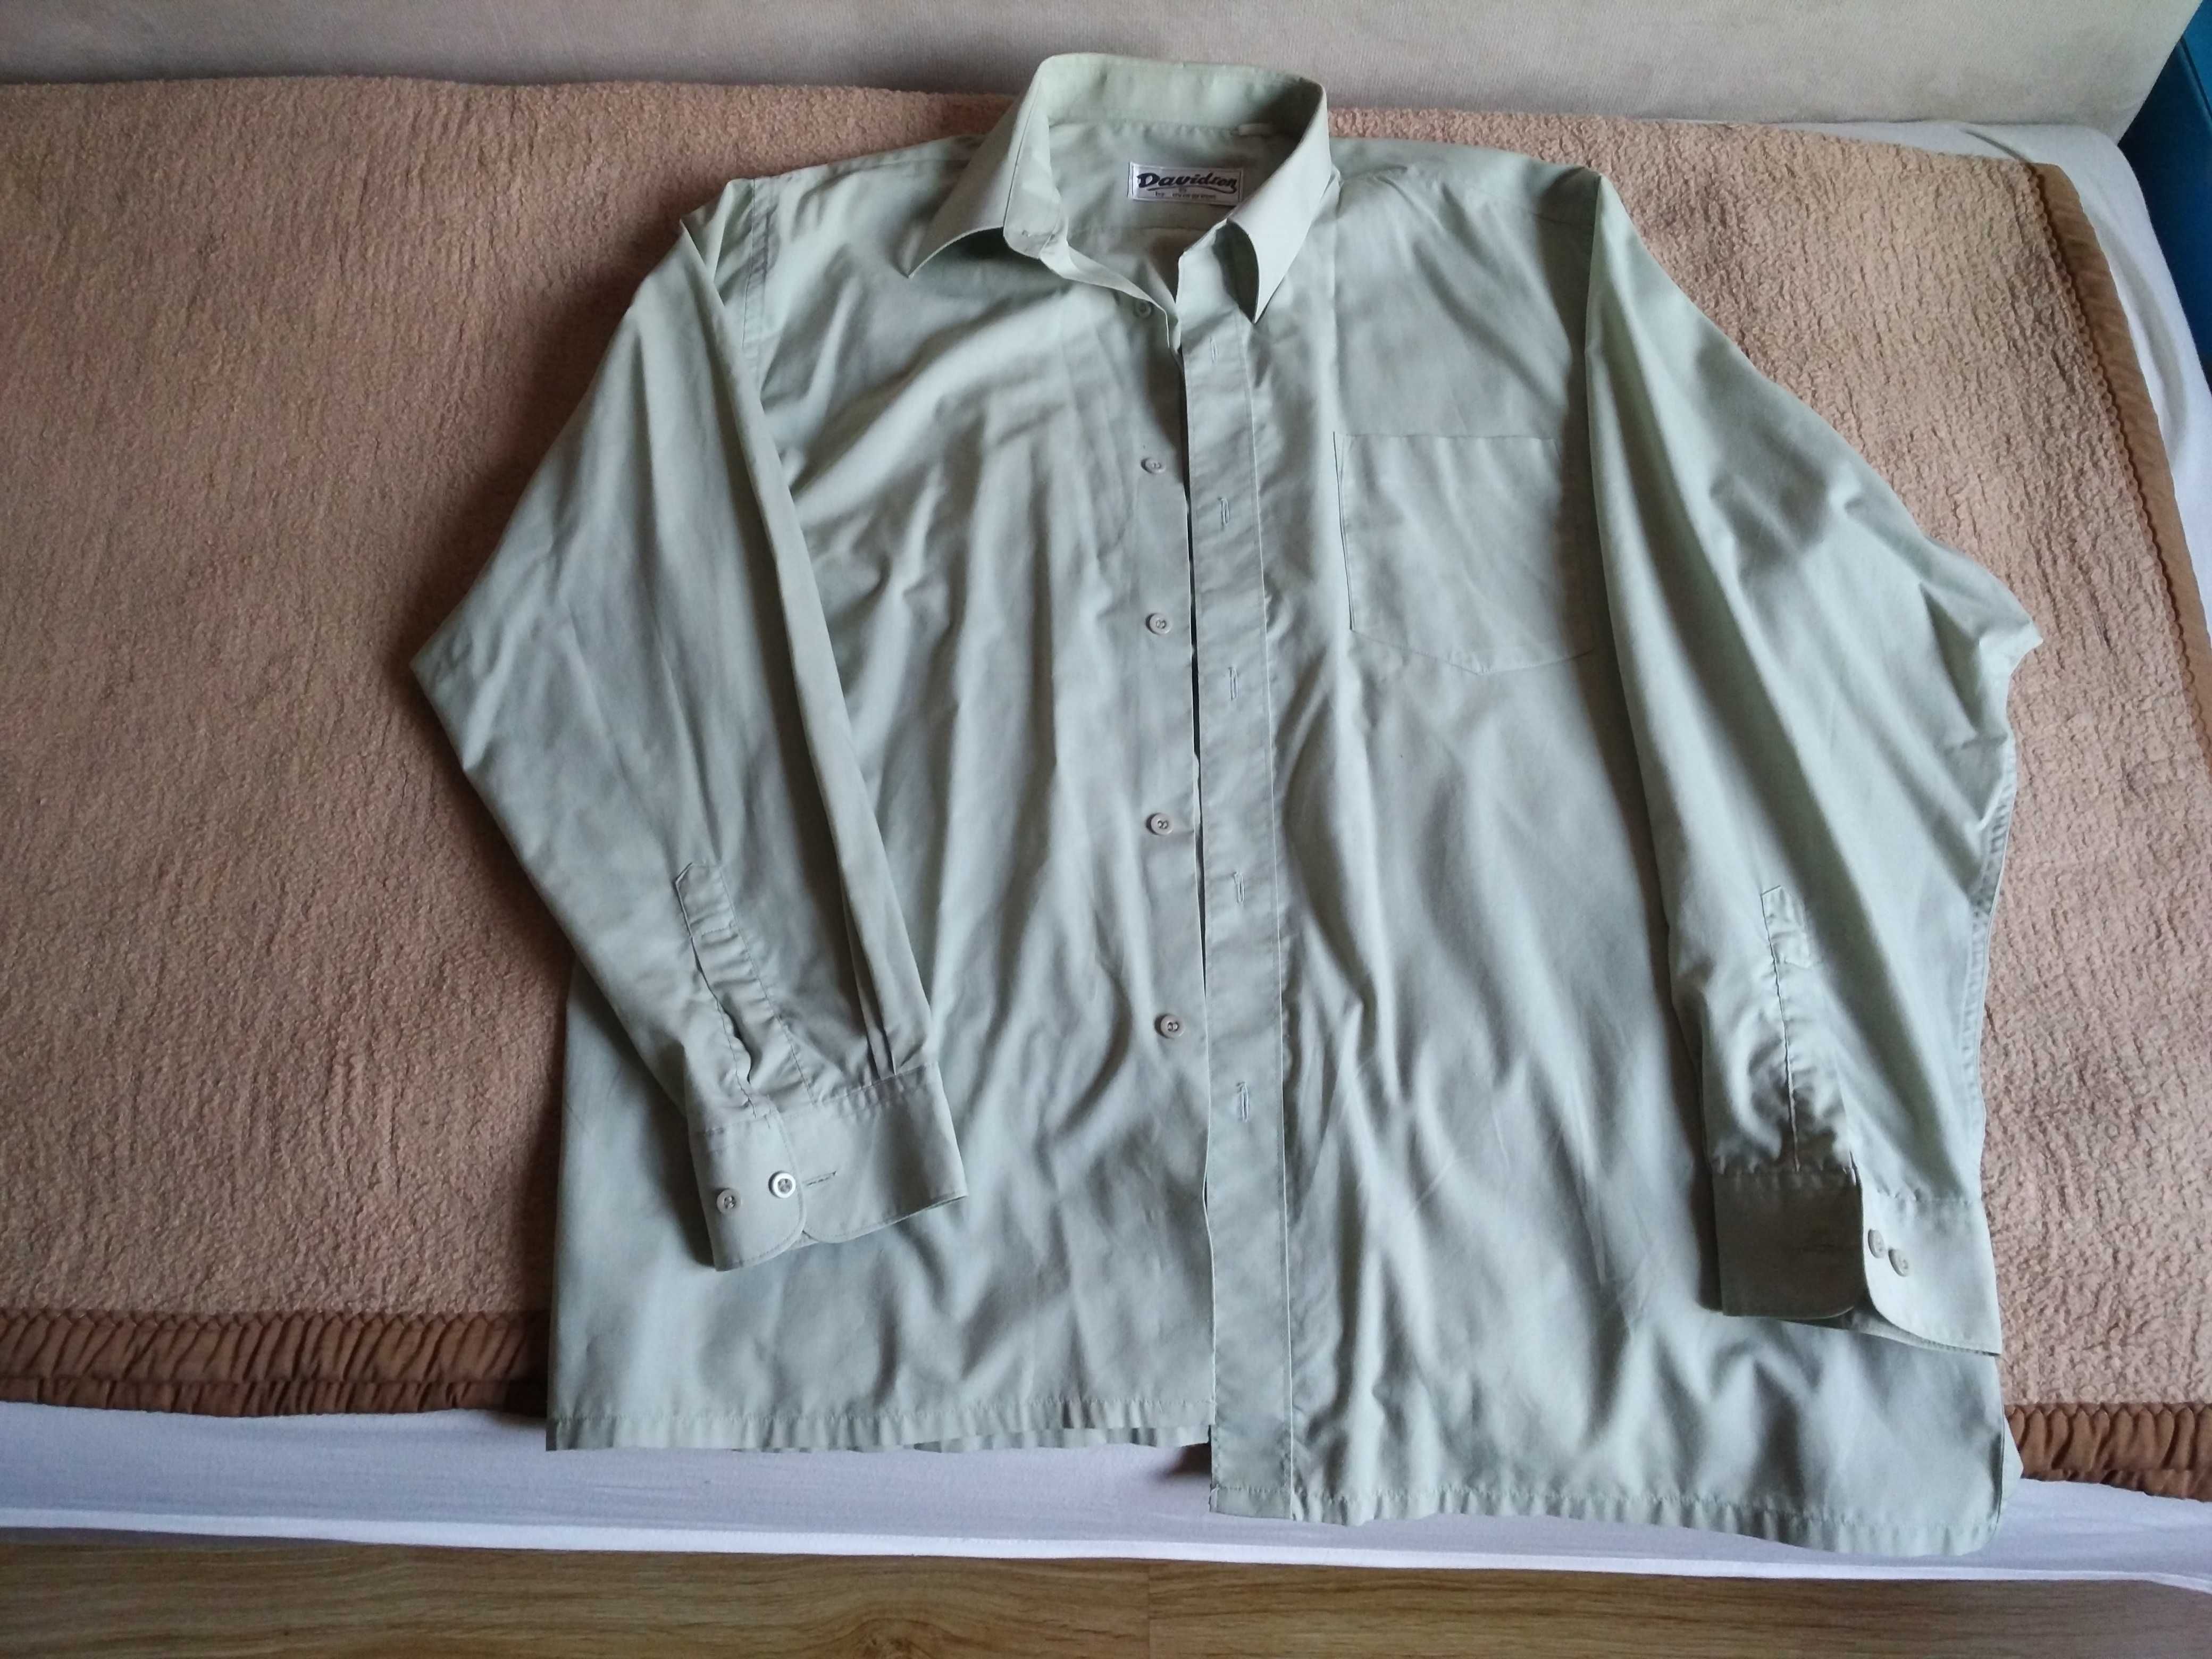 Koszula męska XL 180/115-130 cena za 5 sztuk